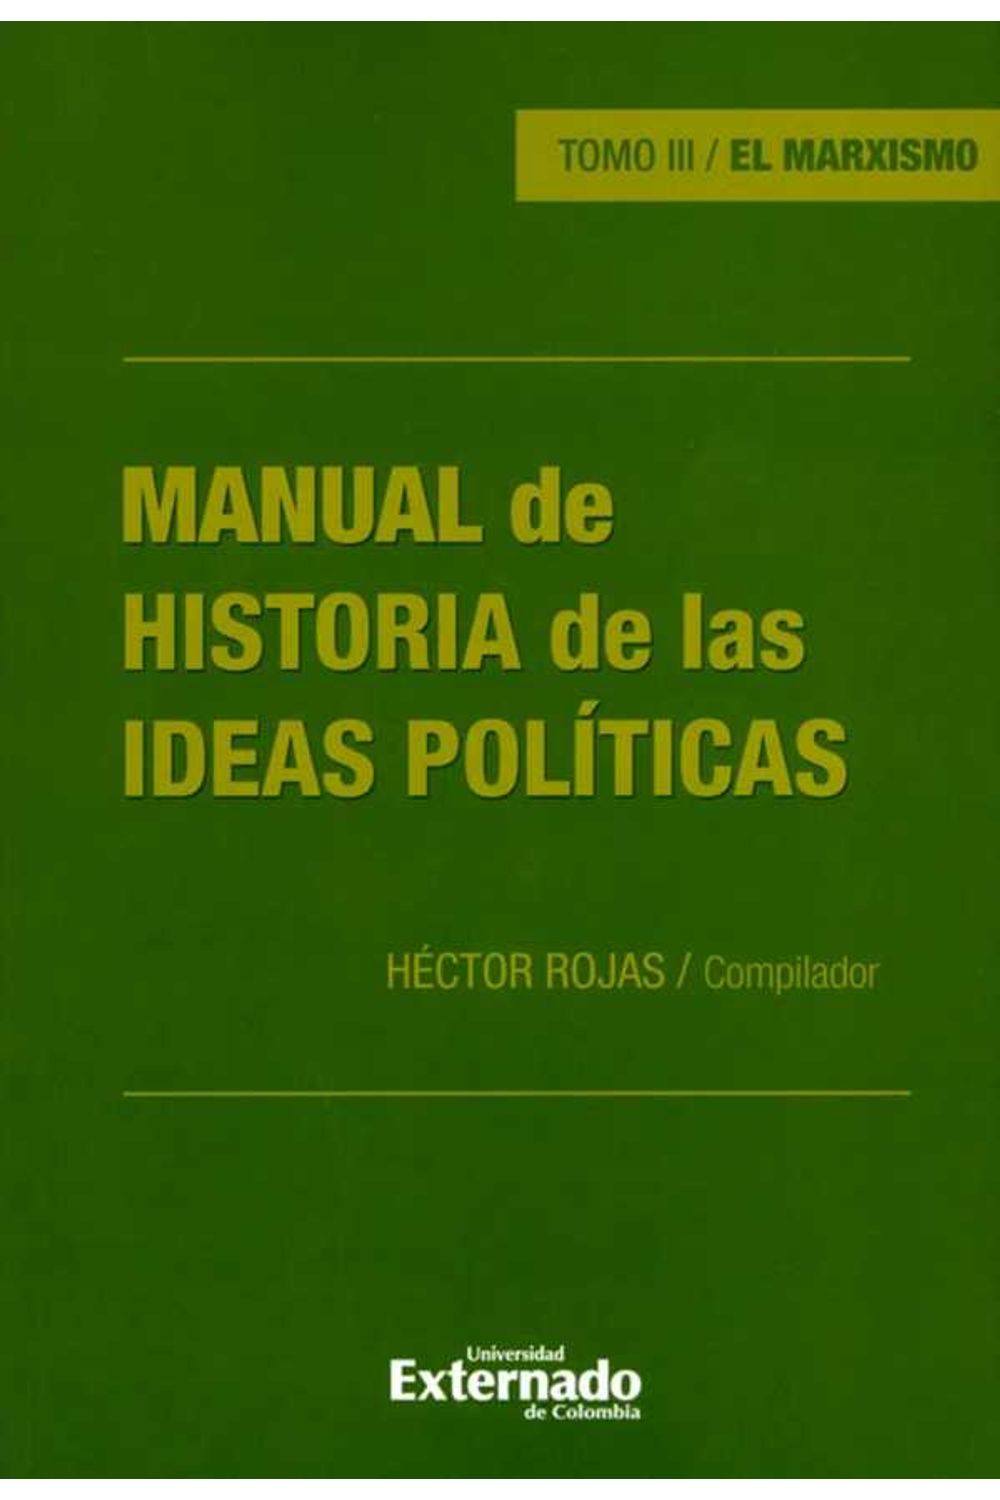 bw-manual-de-historia-de-las-ideas-poliacuteticas-tomo-iii-u-externado-de-colombia-9789587903140